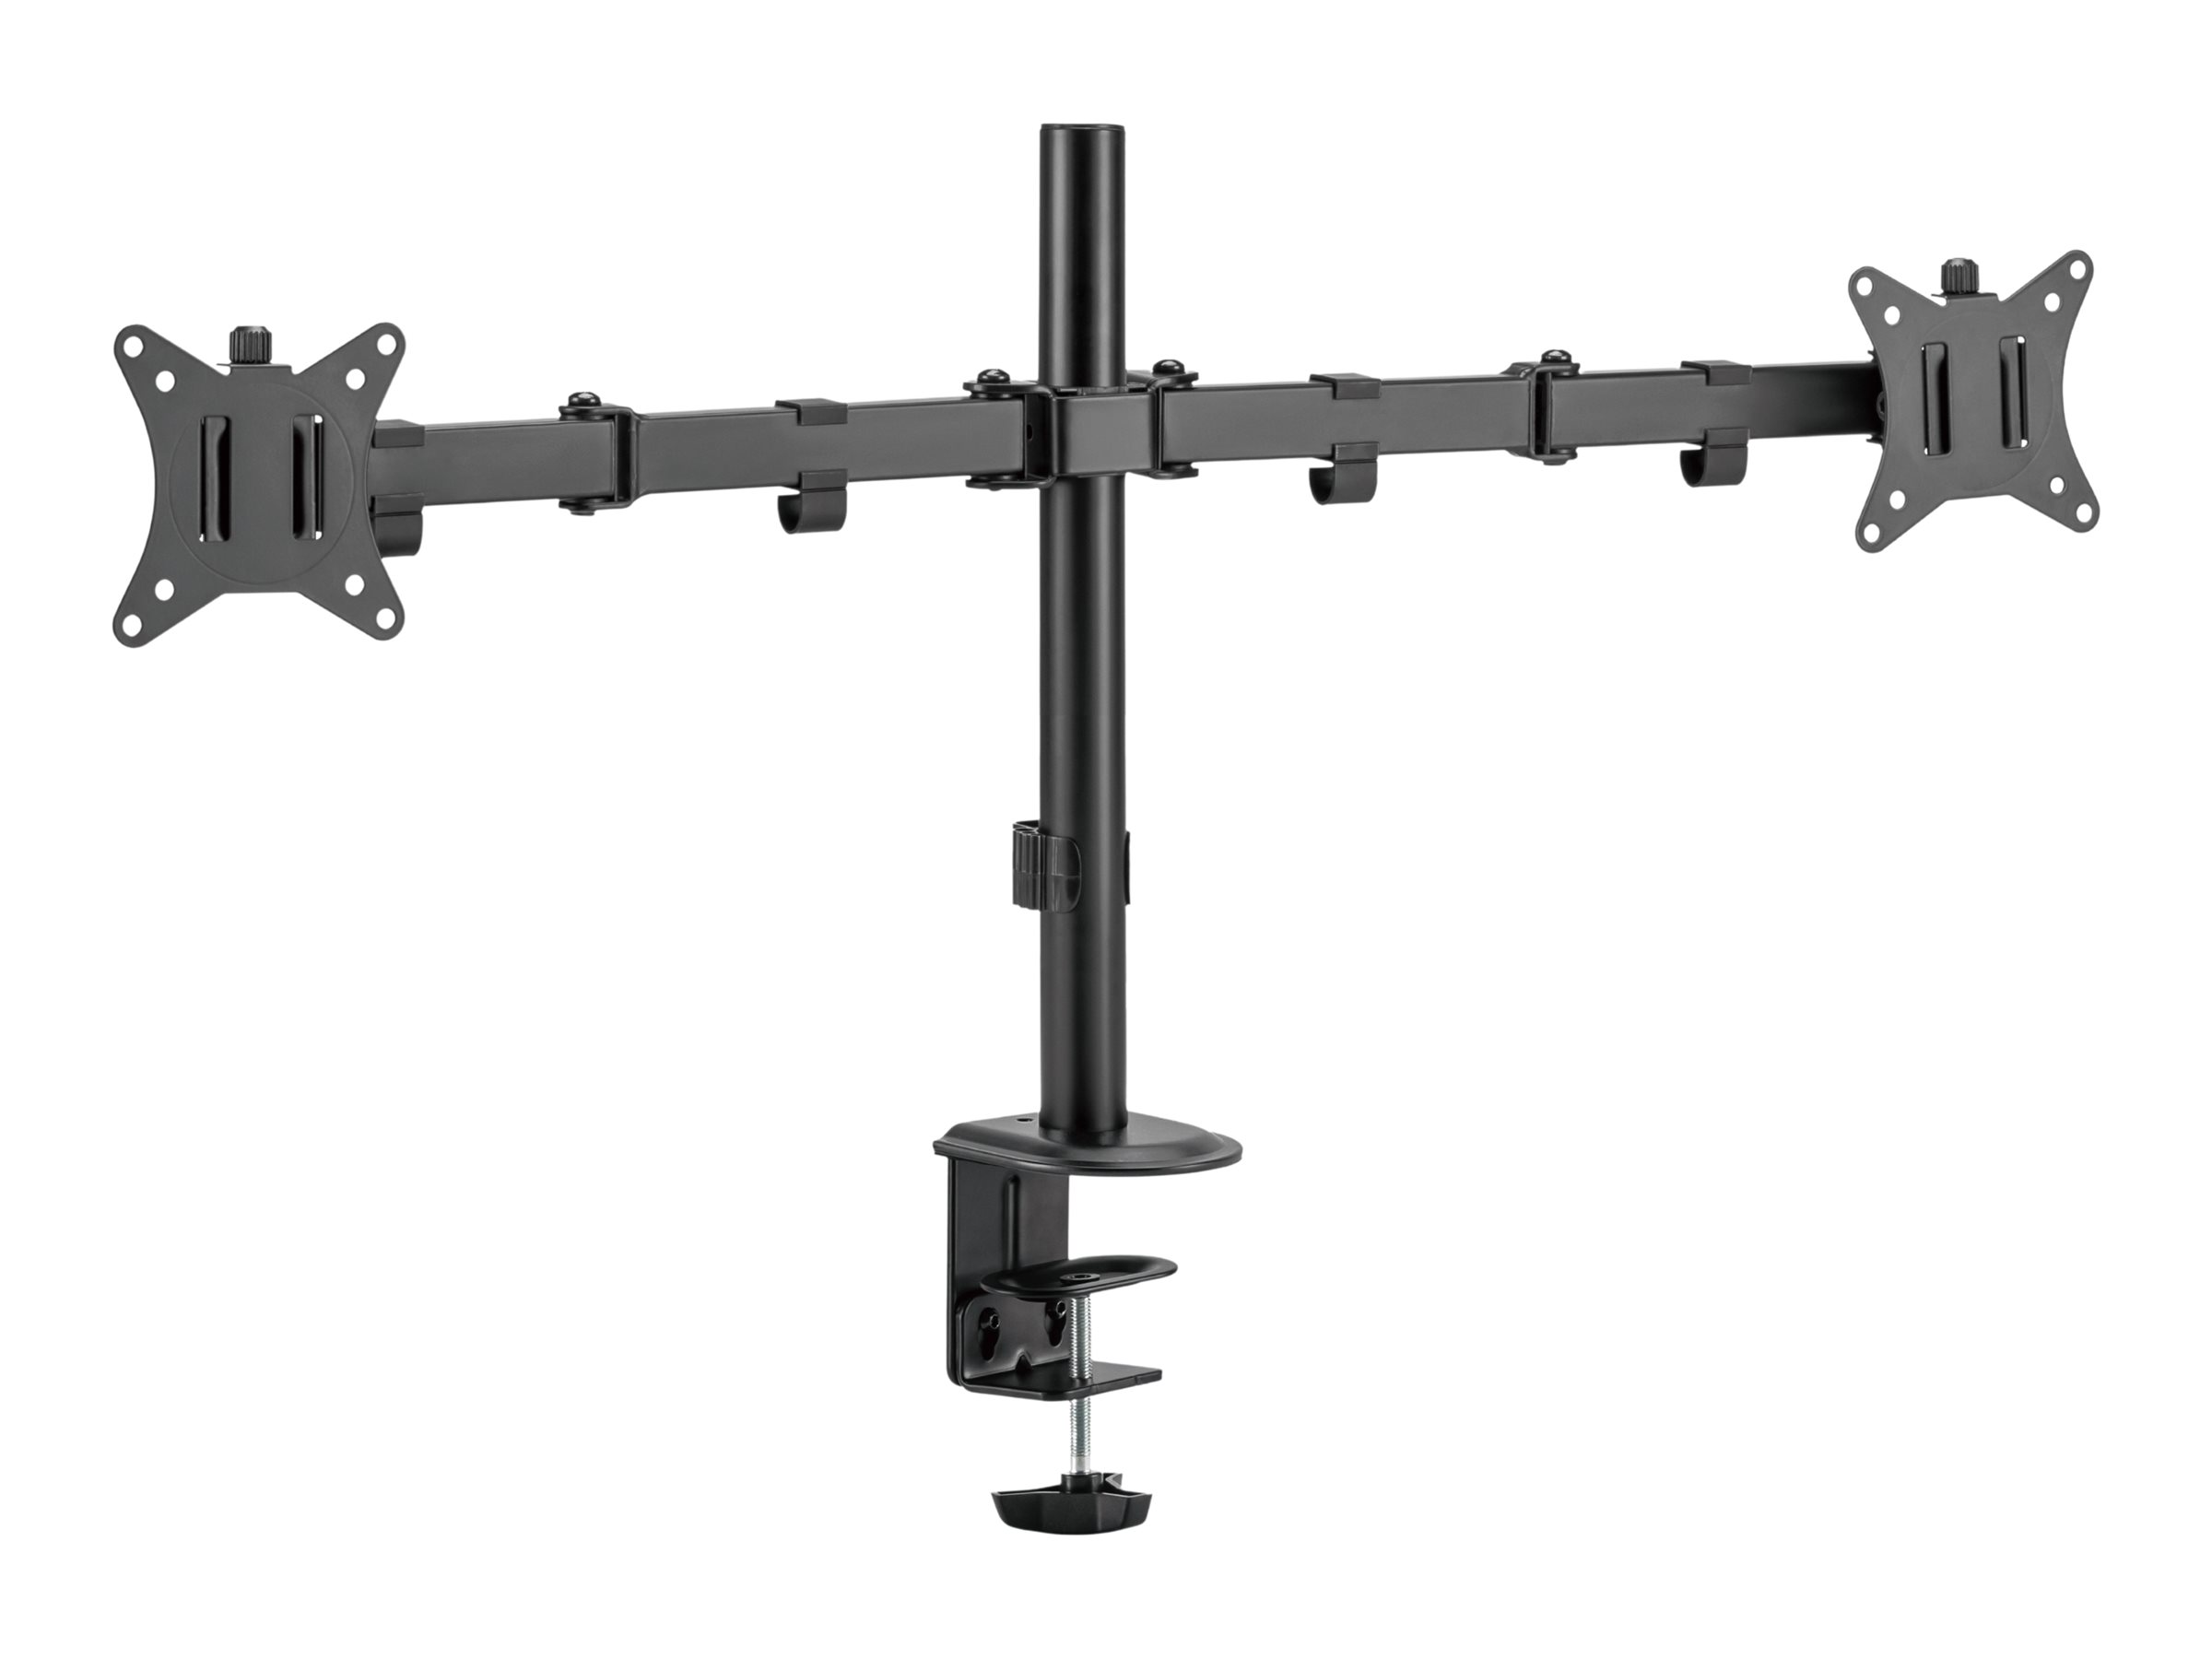 V7 - Befestigungskit (Klammerbasis, 2 Gelenkarme, 2 VESA-Platten) - für 2 Monitore - Stahl - Bildschirmgrösse: 43.2-81.3 cm (17